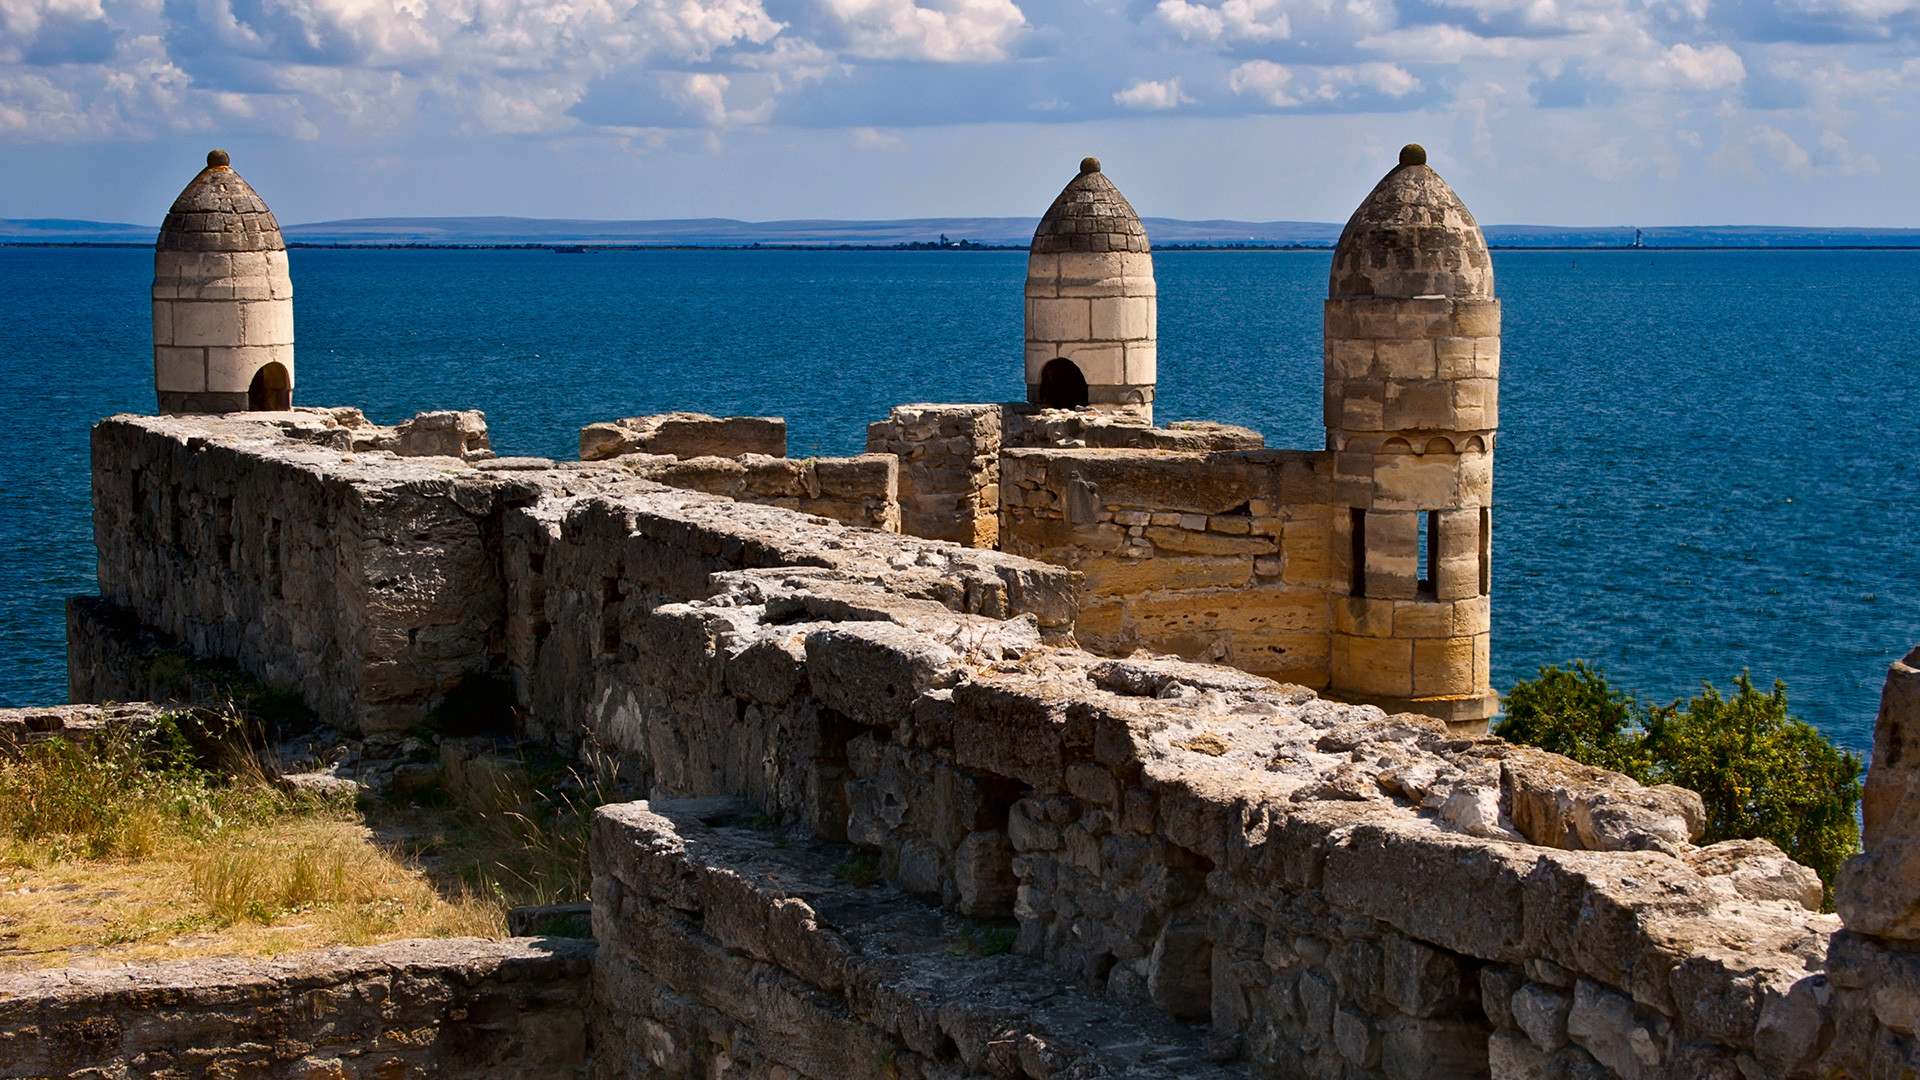 Yeni-Kale fortress in Kerch